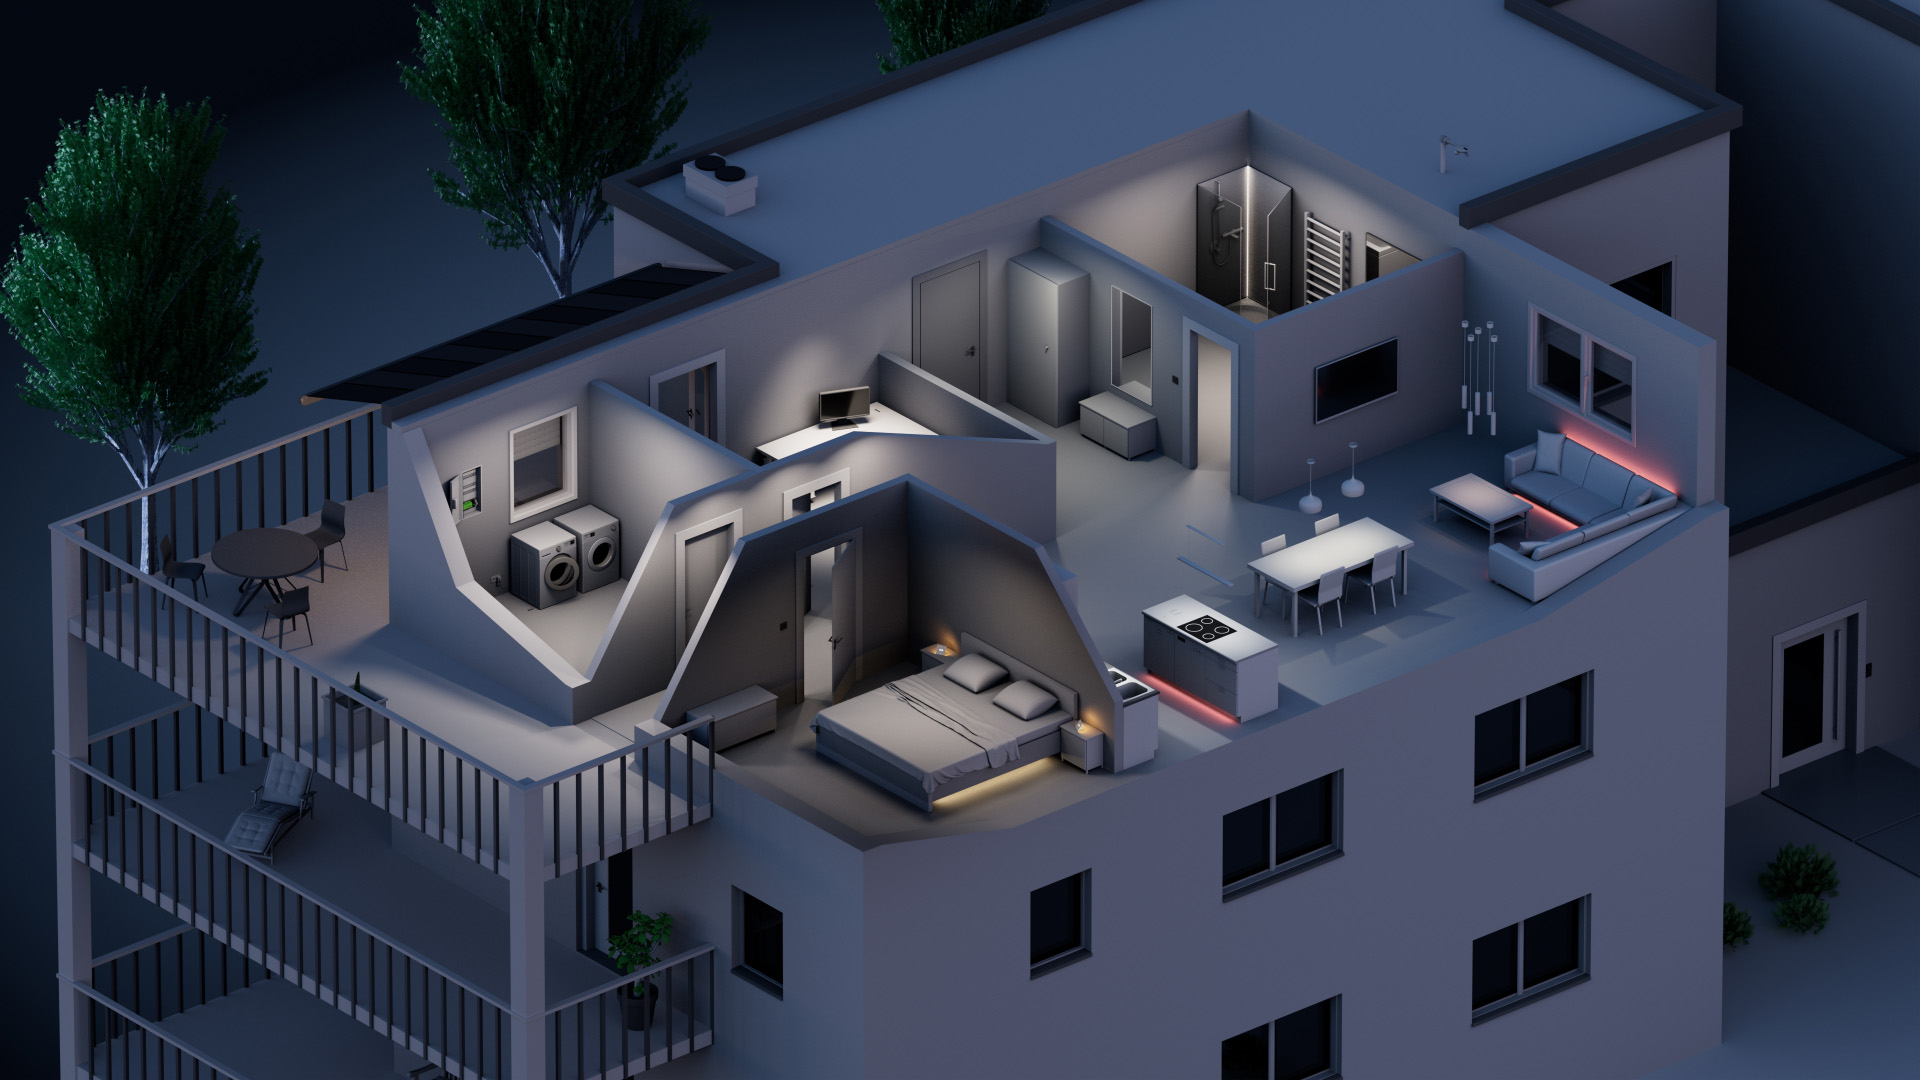 Ein Bild, welches die verschiedenen Lichtstimmungen in einer Wohnung symbolisiert.